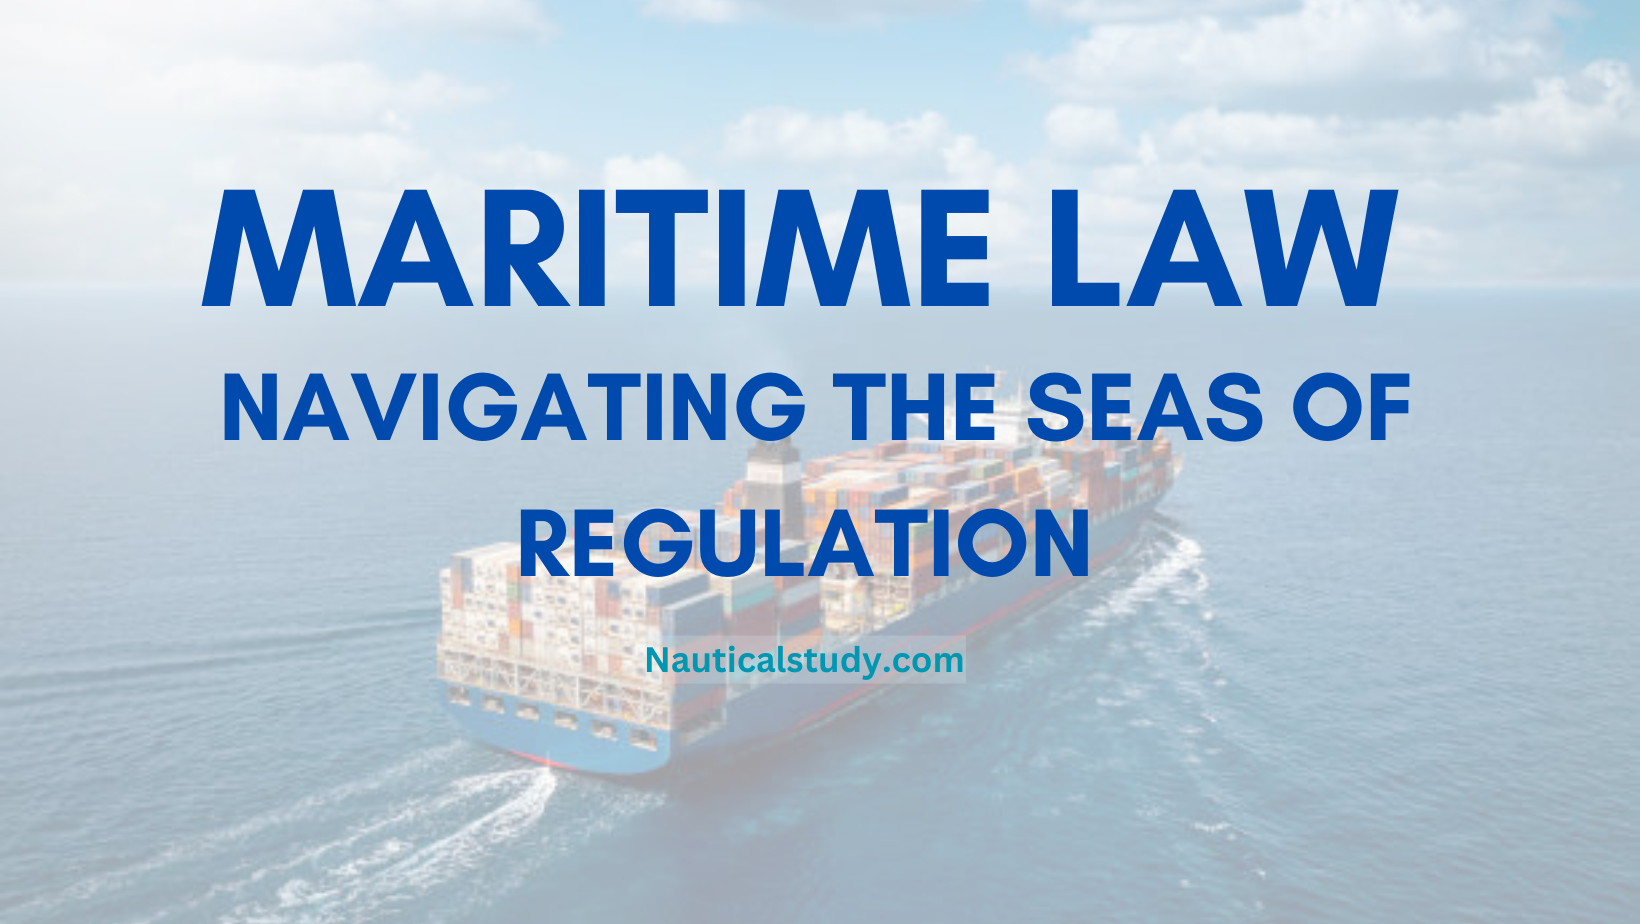 Maritime Law Nauticalstudy.com